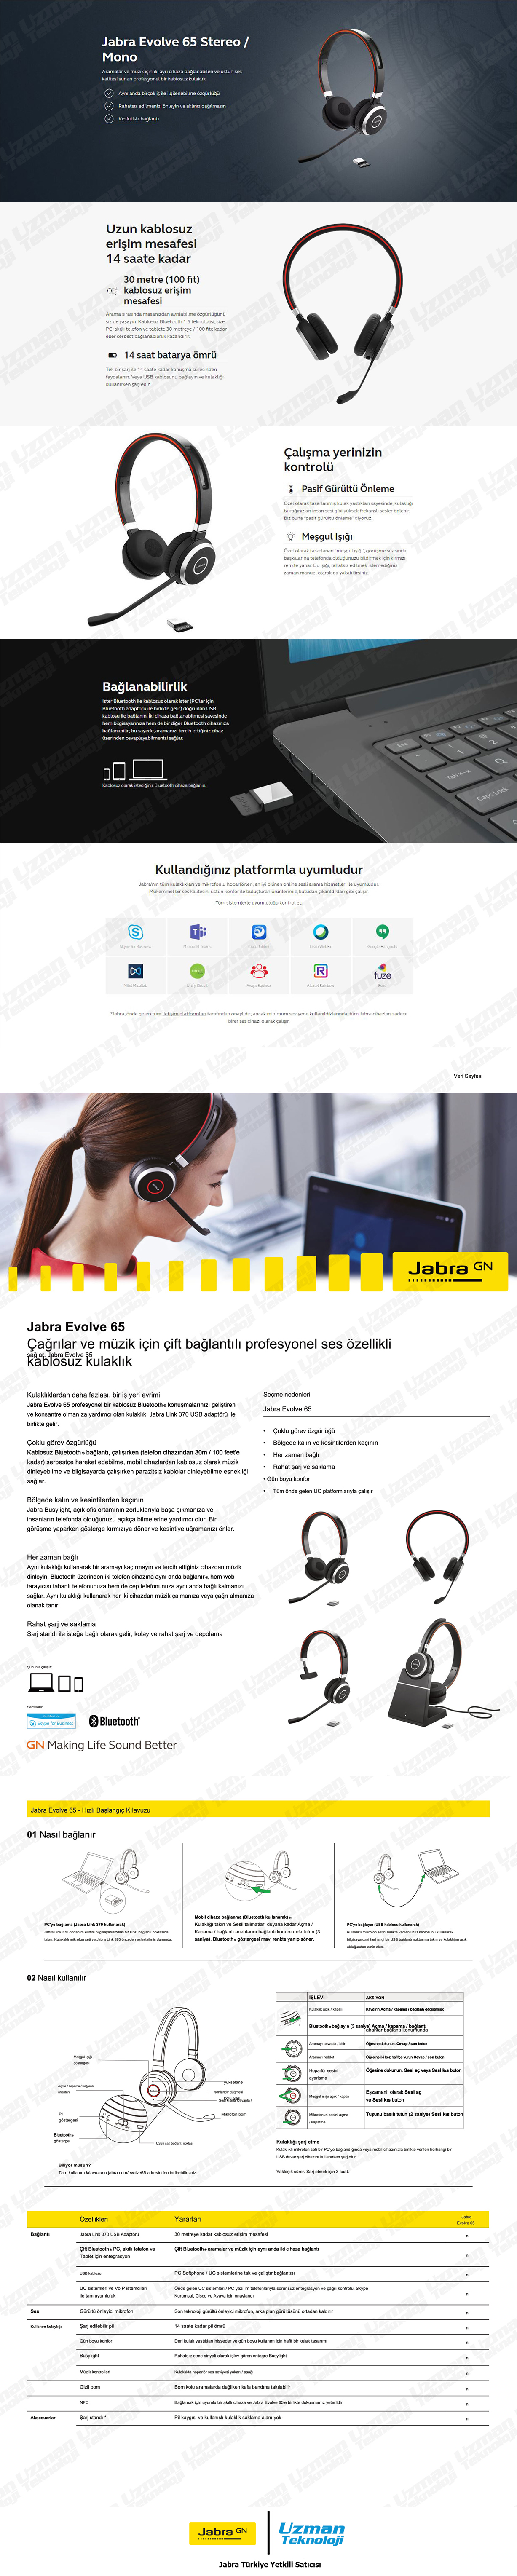 Jabra Evolve 65 Duo USB MS Kablosuz Kulak Üstü Kulaklık Özellikleri